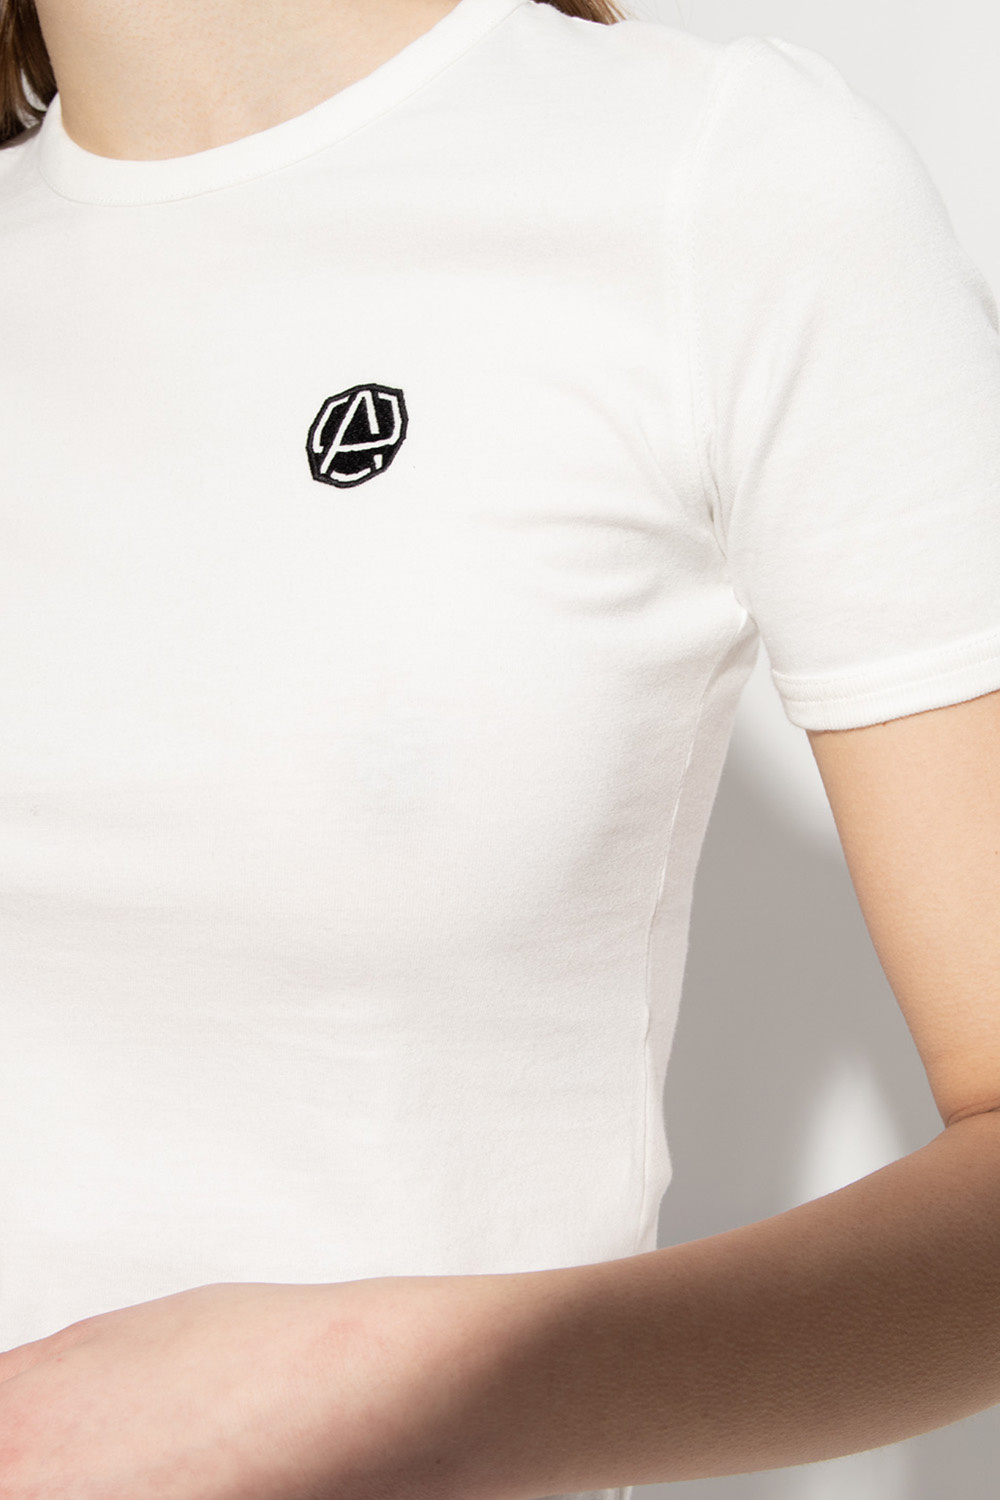 Ambush This casual T-shirt brings a bold yet minimal look to Kids wardrobe